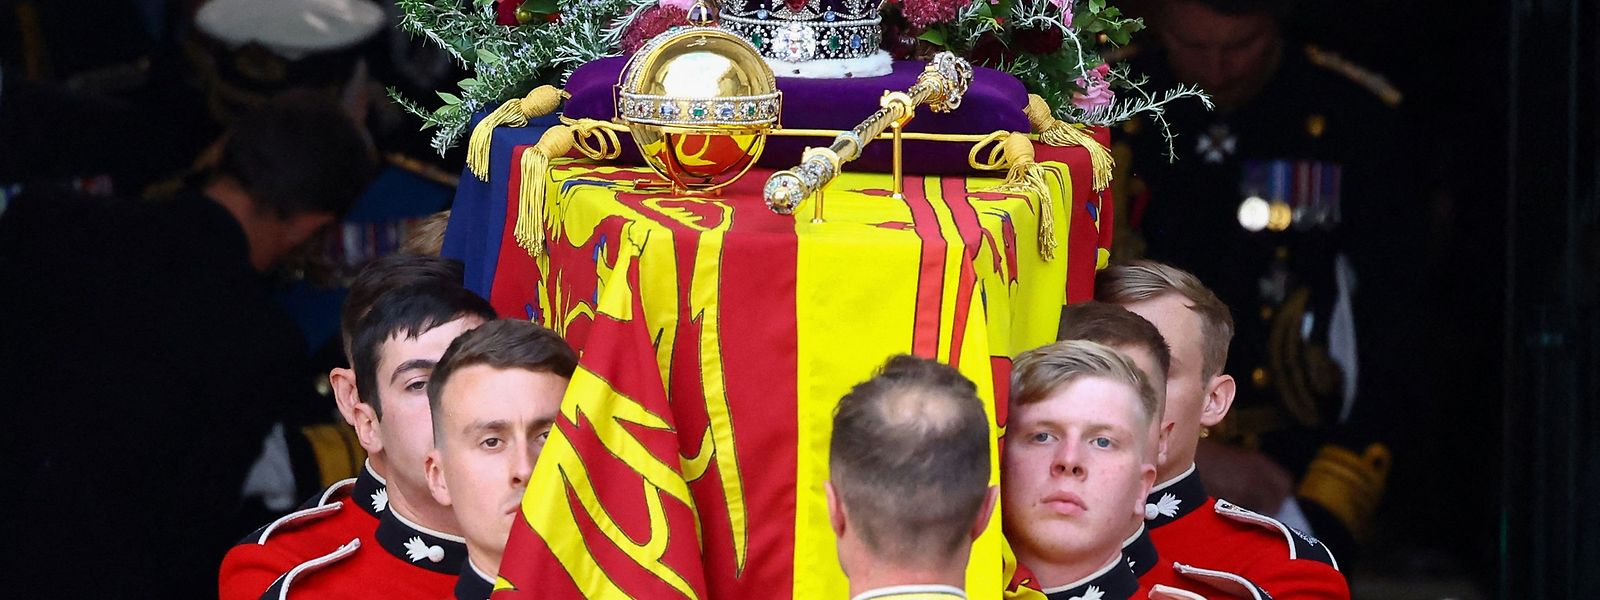 Spektakel mit Pomp und royalem Zeremoniell: Mit einem feierlichen Staatsbegräbnis hat das Vereinigte Königreich seine Queen geehrt. 